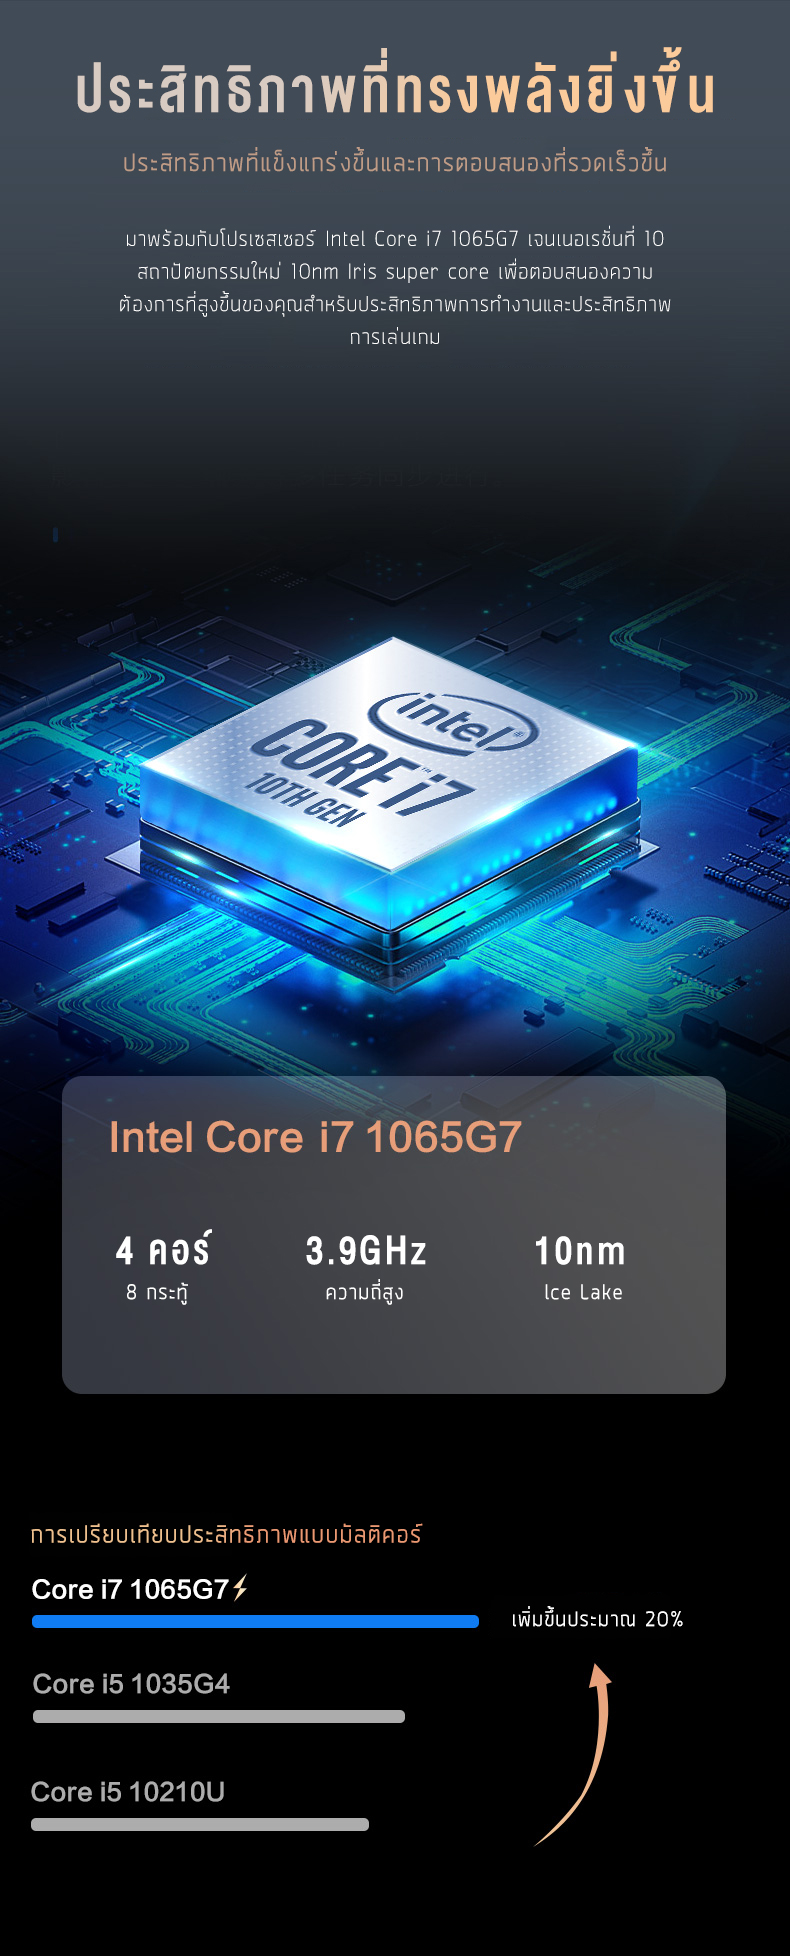 ข้อมูลเกี่ยวกับ โน๊ตบุ๊ค ASUS factory&G 2022 new Intel i7 gen 10 RAM 16GB คอมแรงๆเล่นเกม เล่นคอมพิวเตอร์โน๊ตบุ๊ค gta v มือ 1 ราคาถูก Laptop Gaming Notebook Intel i5 RAM 8G SSD 128/256/512gb Warranty